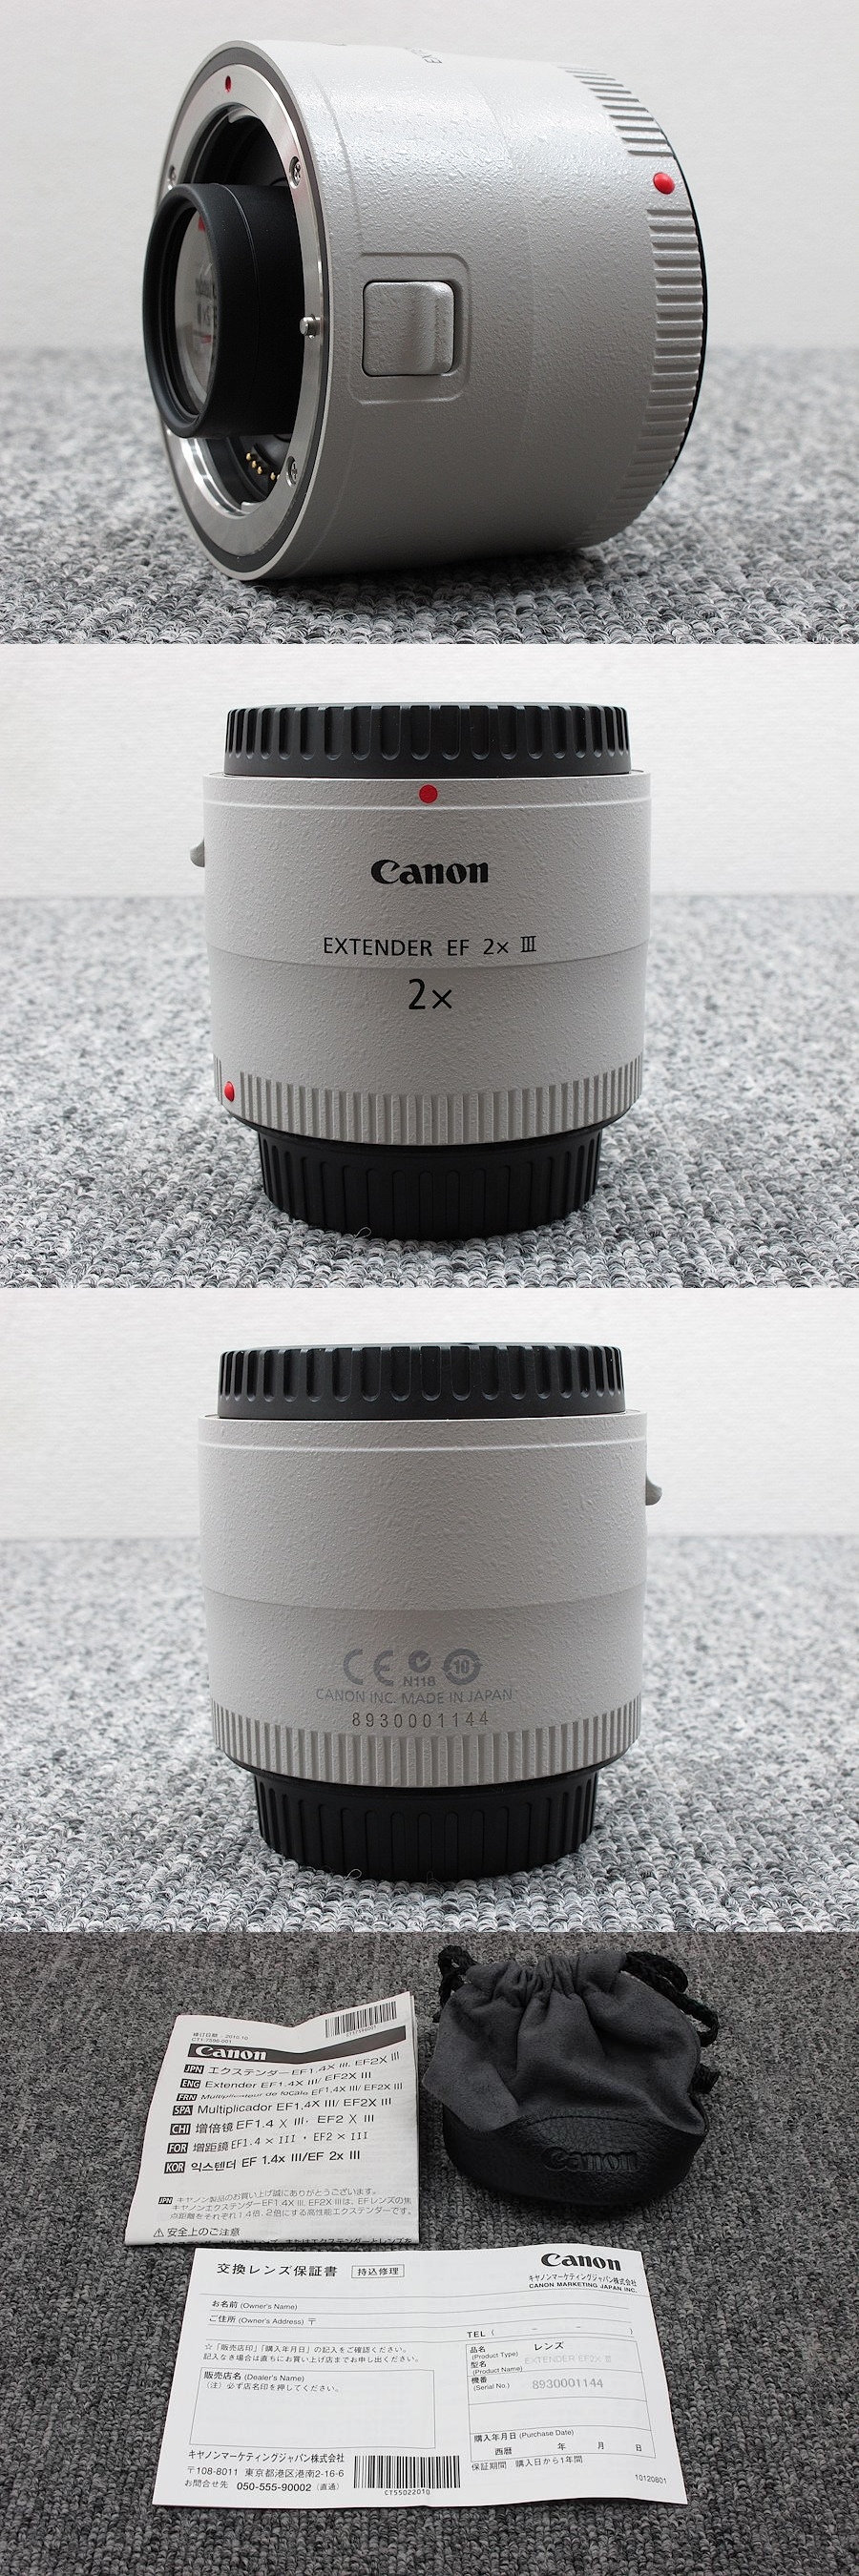 美品 Canon Extender Ef2x カメラレンズ 元箱付 中古オーディオ買取 販売 通販のショップアフロオーディオ横浜